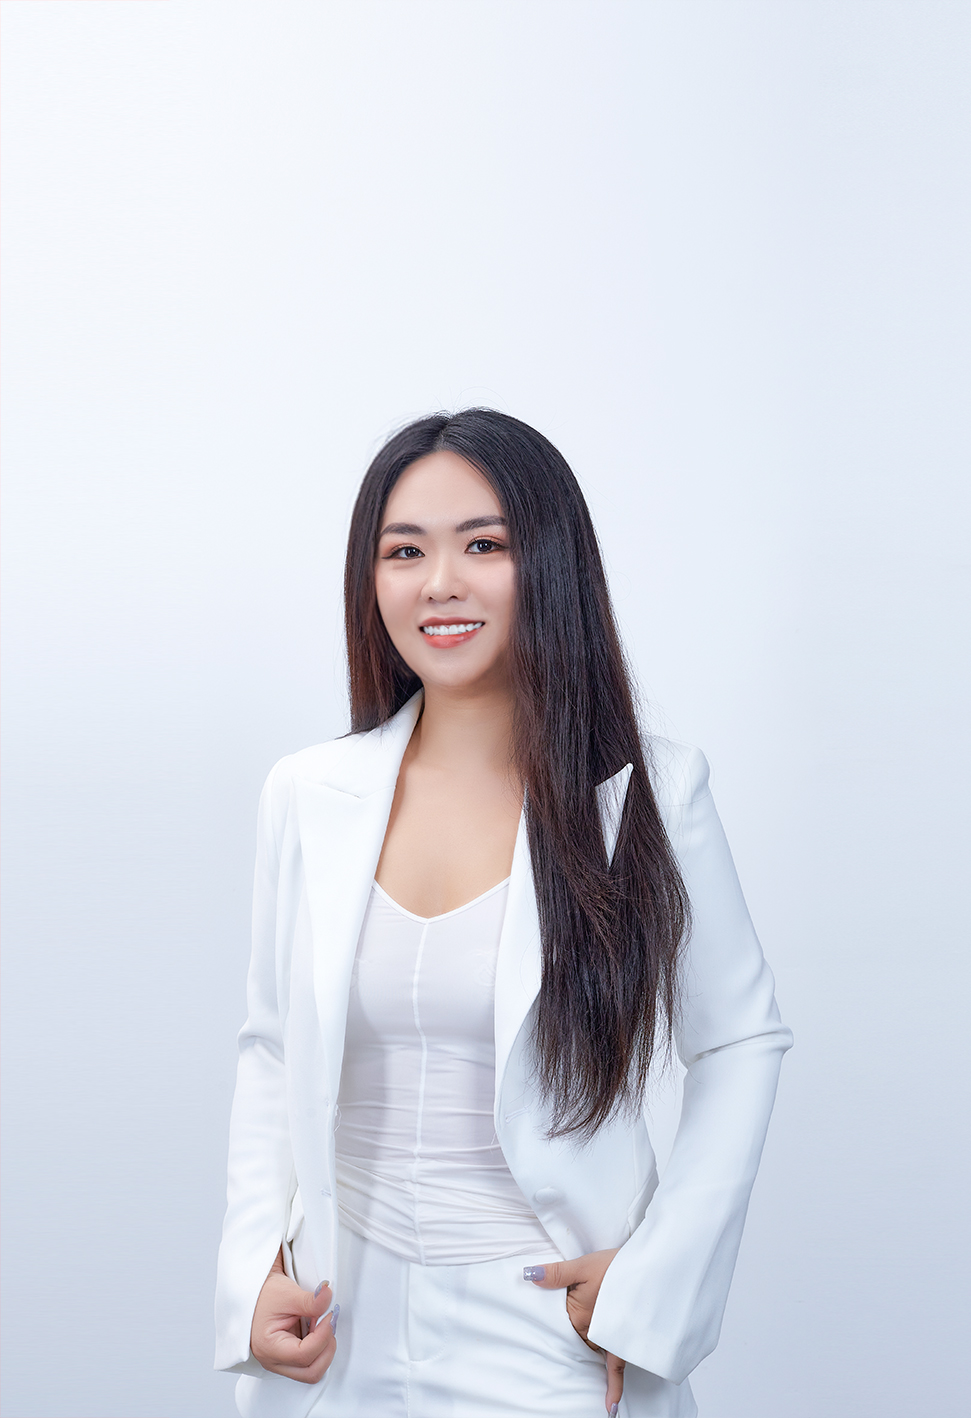 Gặp gỡ CEO Trần Thị Đan Thanh - Nữ doanh nhân lập nghiệp từ hai bàn tay trắng Ảnh 1